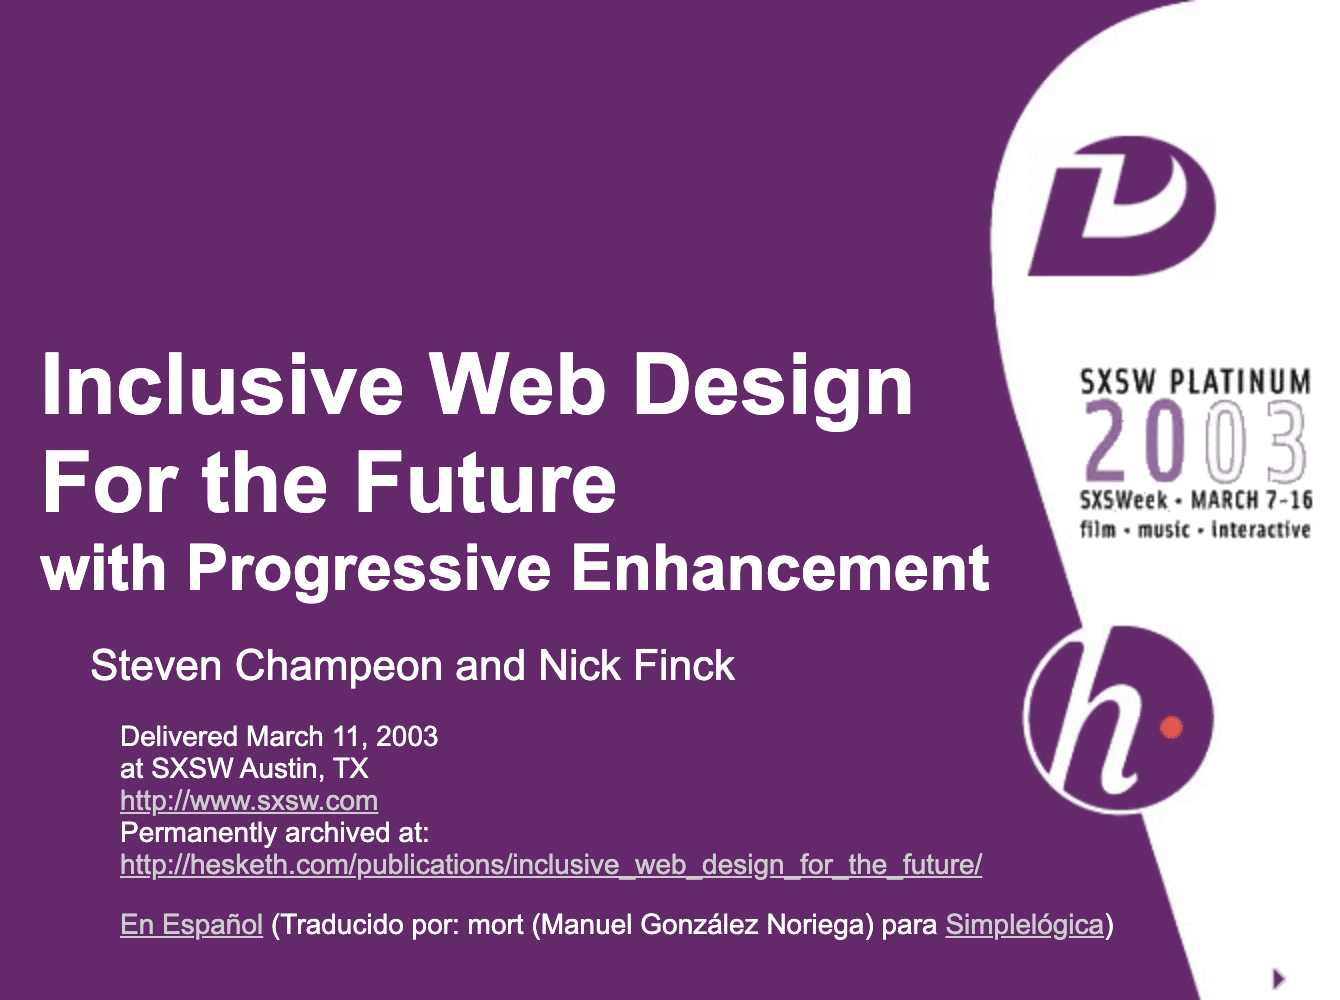 采用渐进式增强的包容性网页设计，迎接未来。Finck 和 Champeon 原始演示文稿的标题幻灯片。